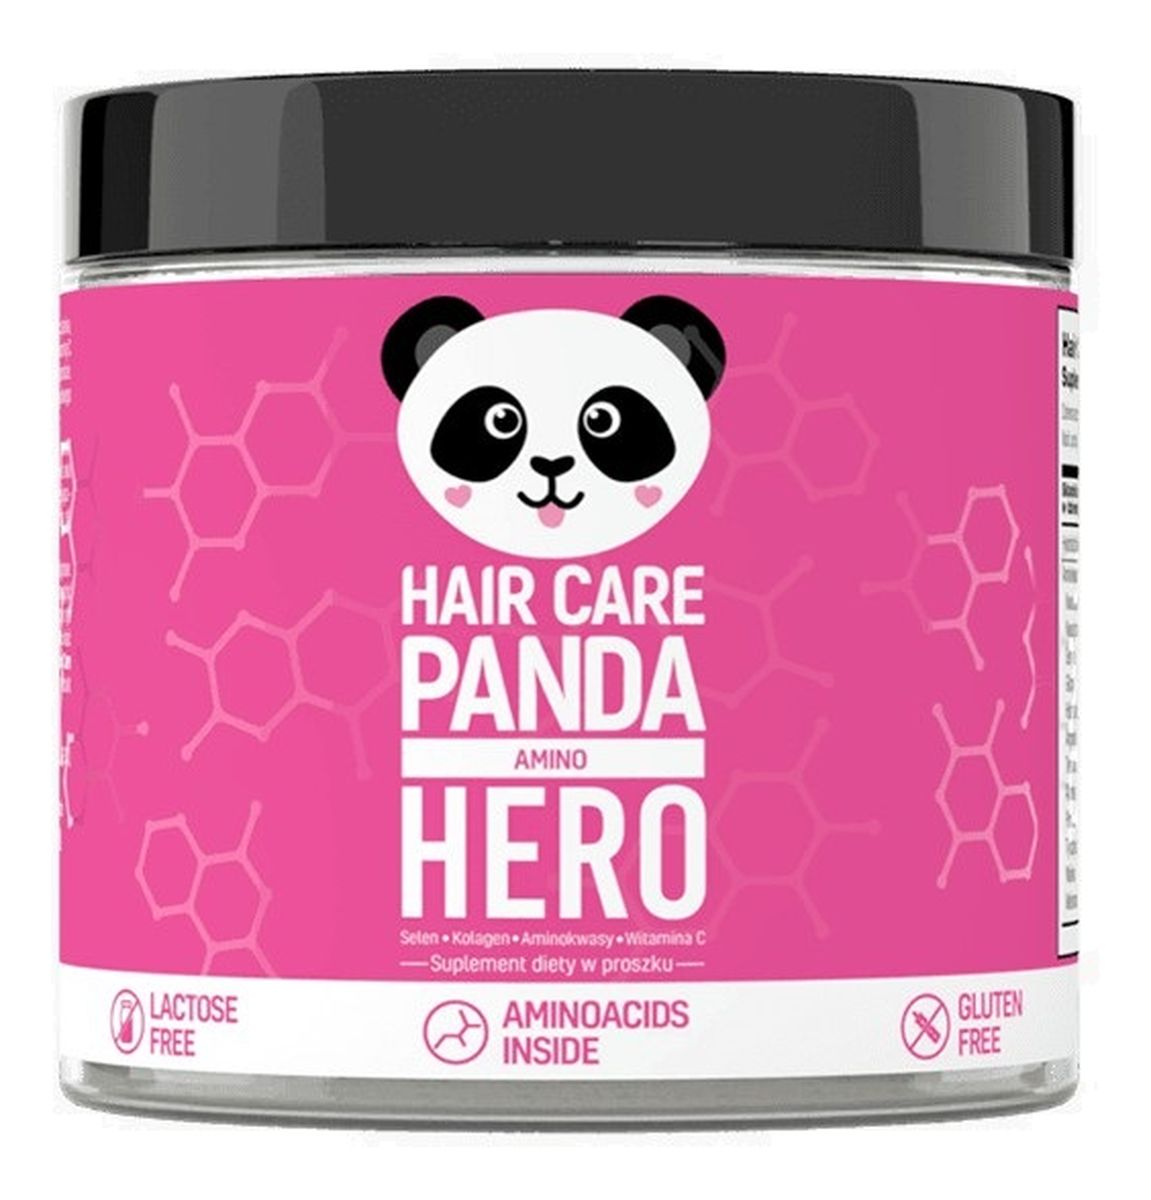 Hair care panda amino hero suplement diety w proszku na zdrowe włosy